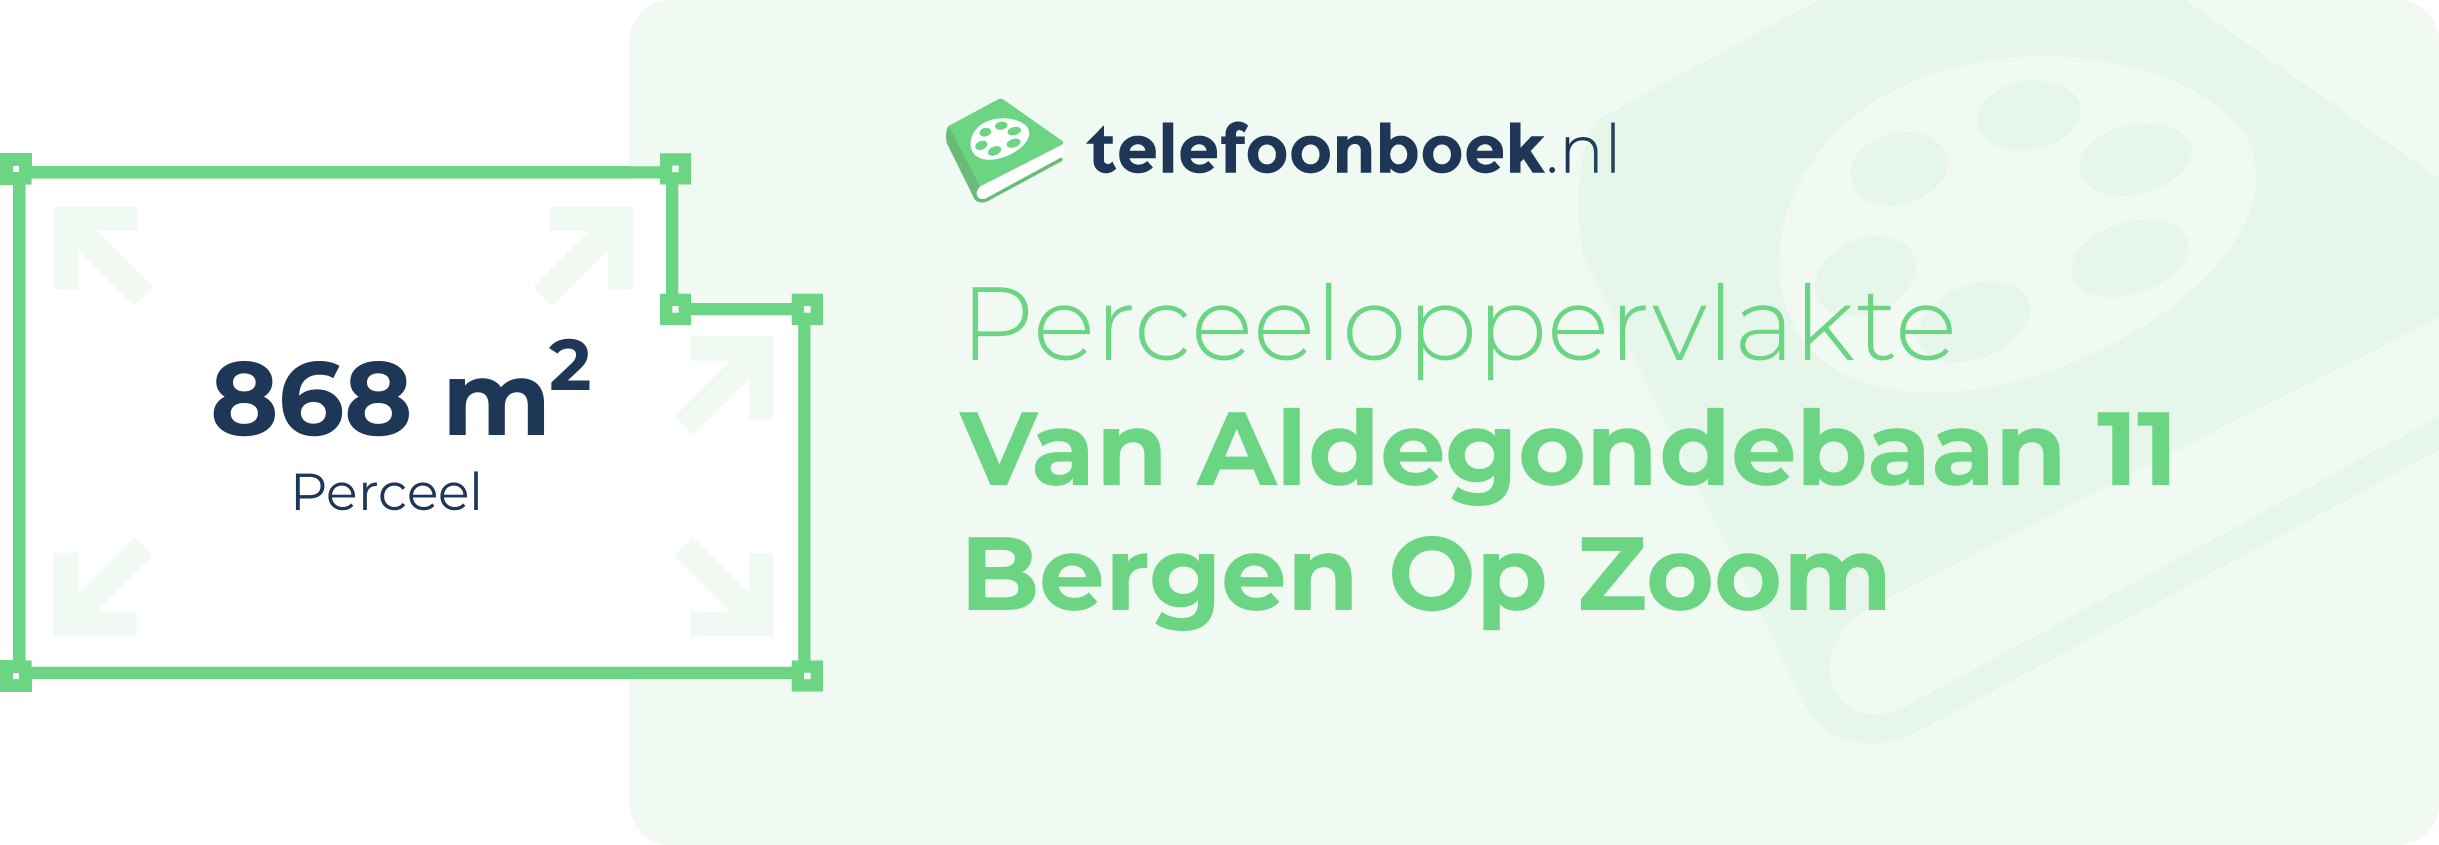 Perceeloppervlakte Van Aldegondebaan 11 Bergen Op Zoom